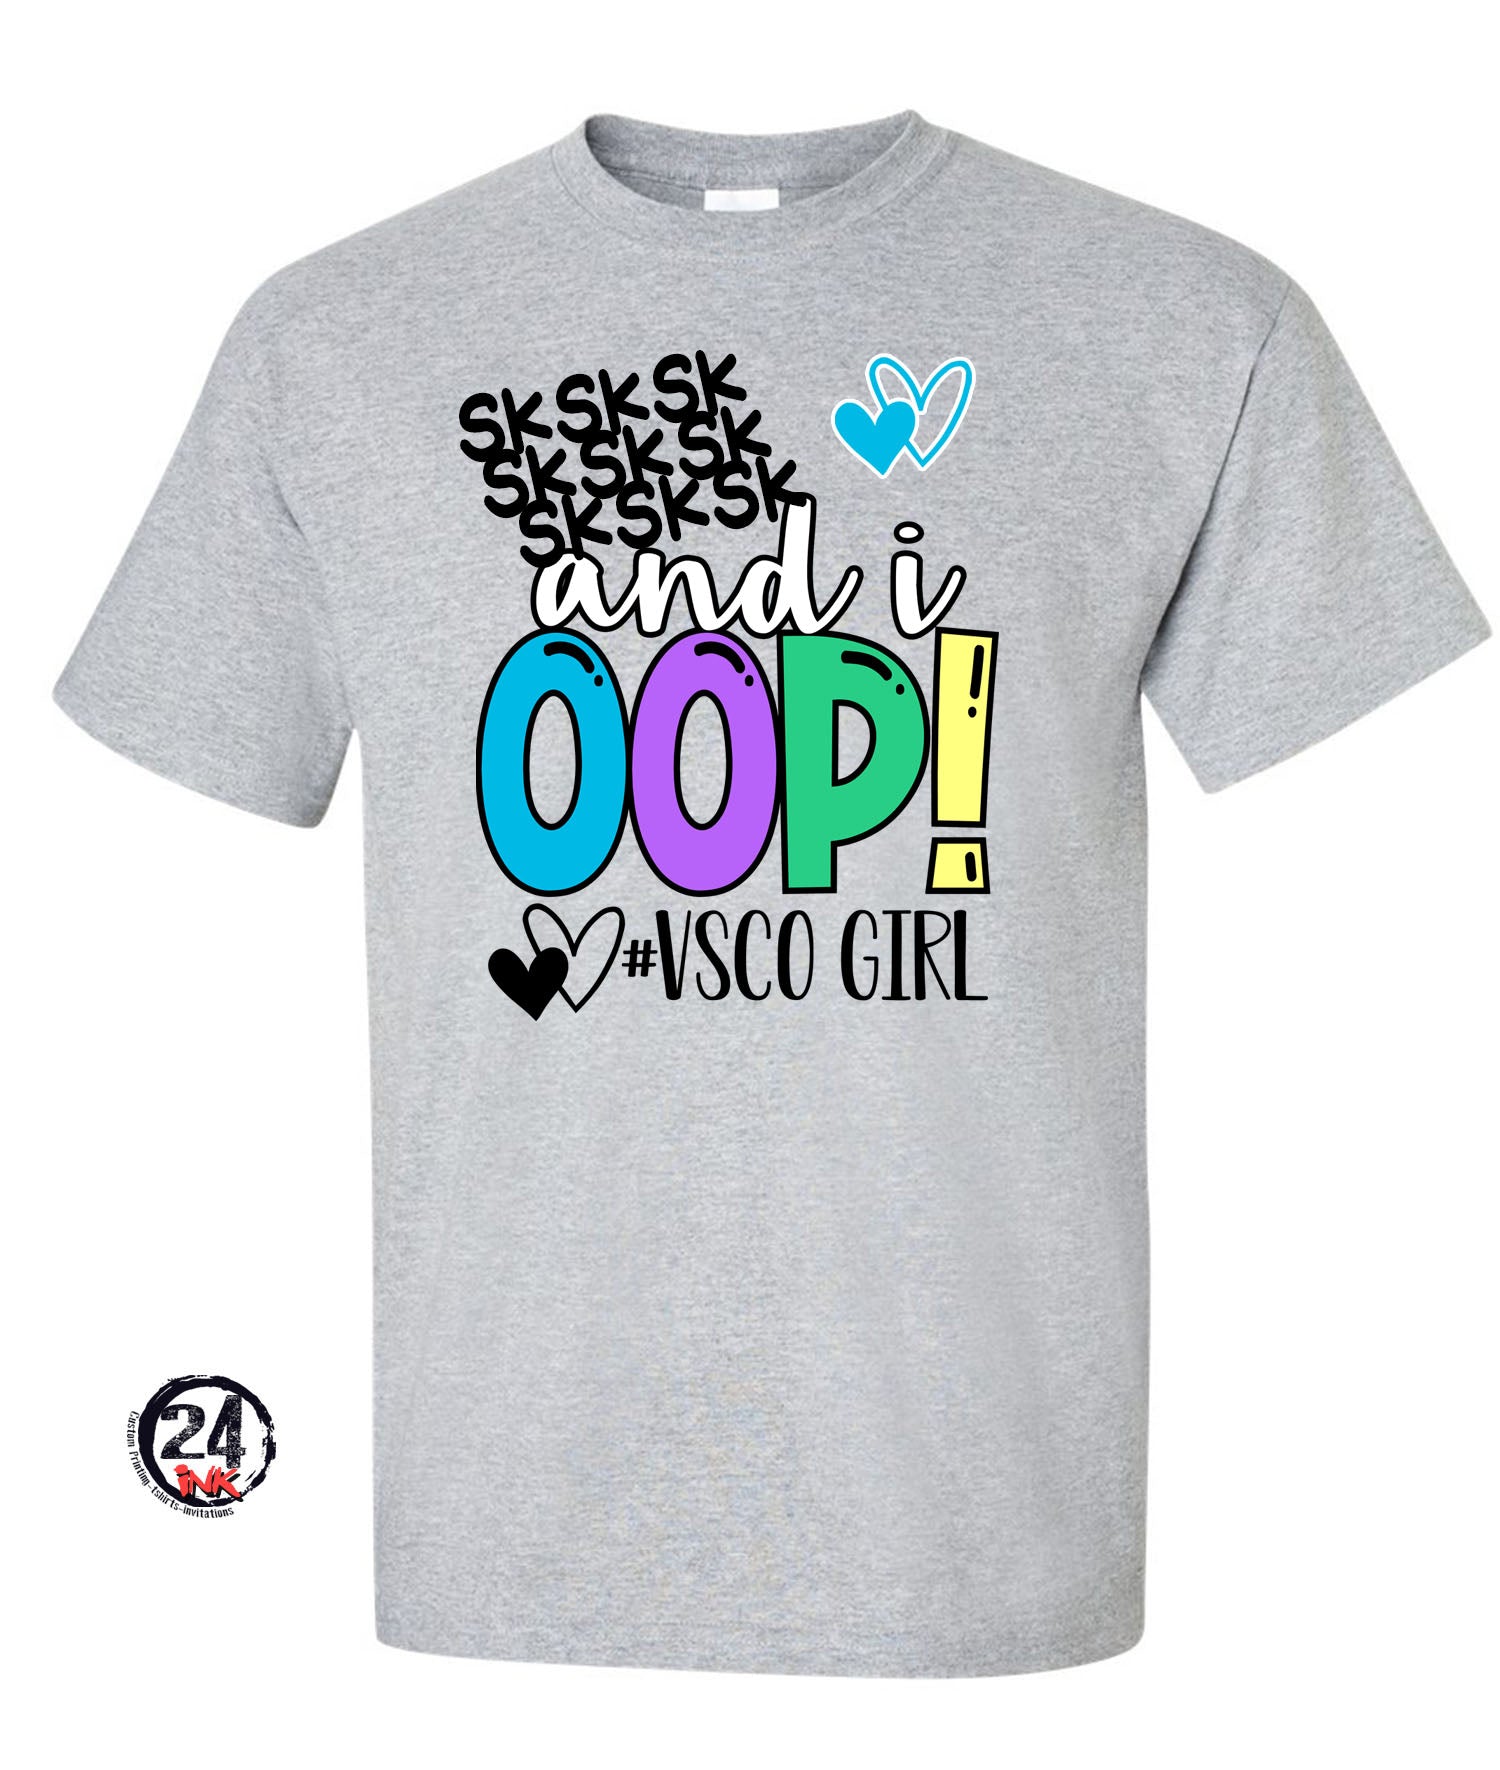 VSCO Girl T-shirt, SKSKS and I oop